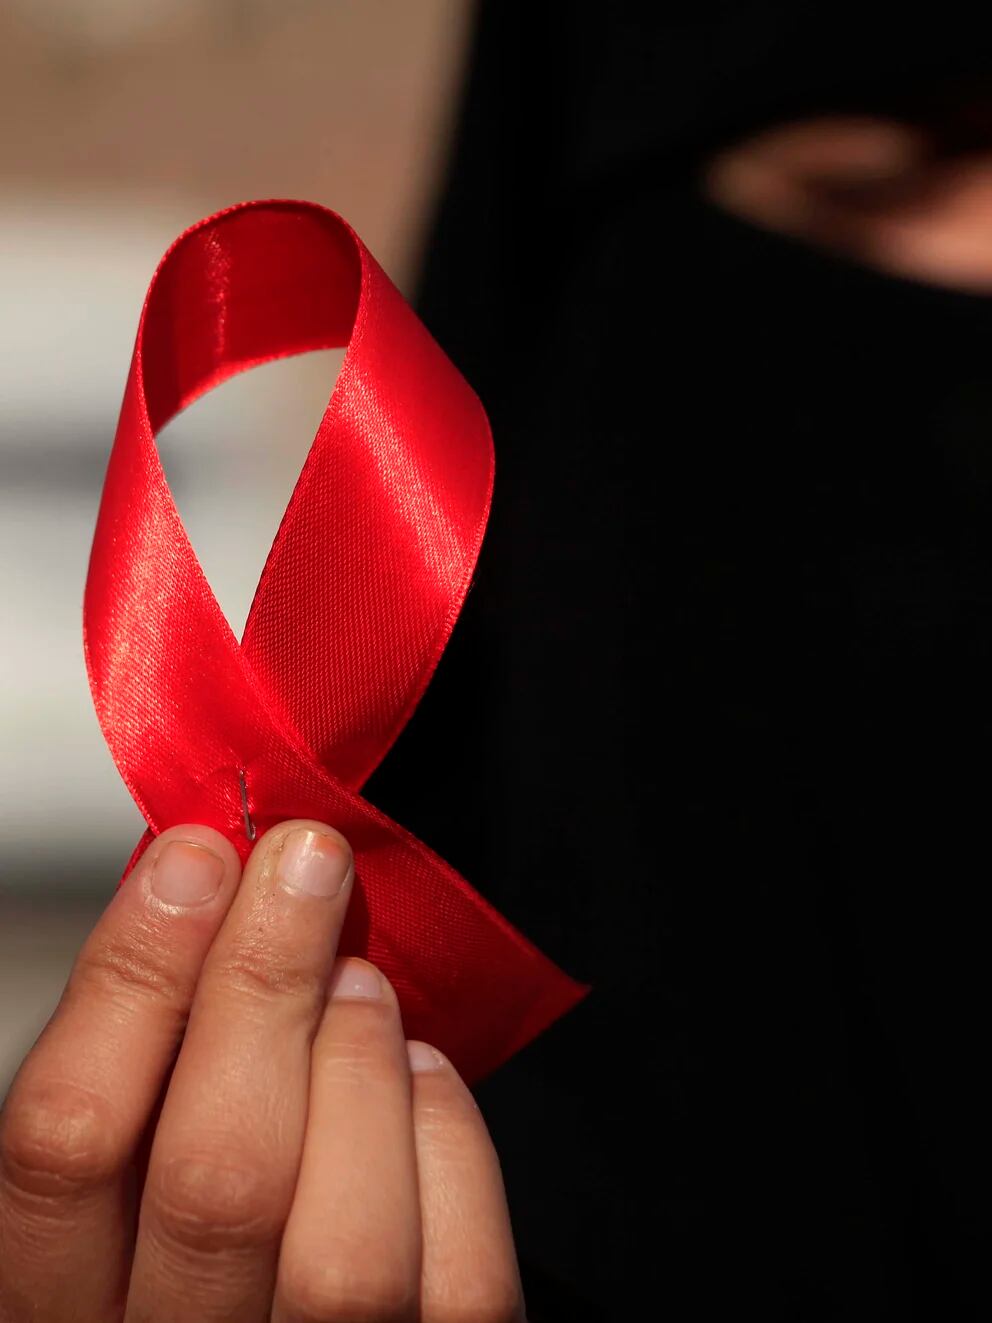 VIH: ¿Qué significa el lazo rojo? - La Unión